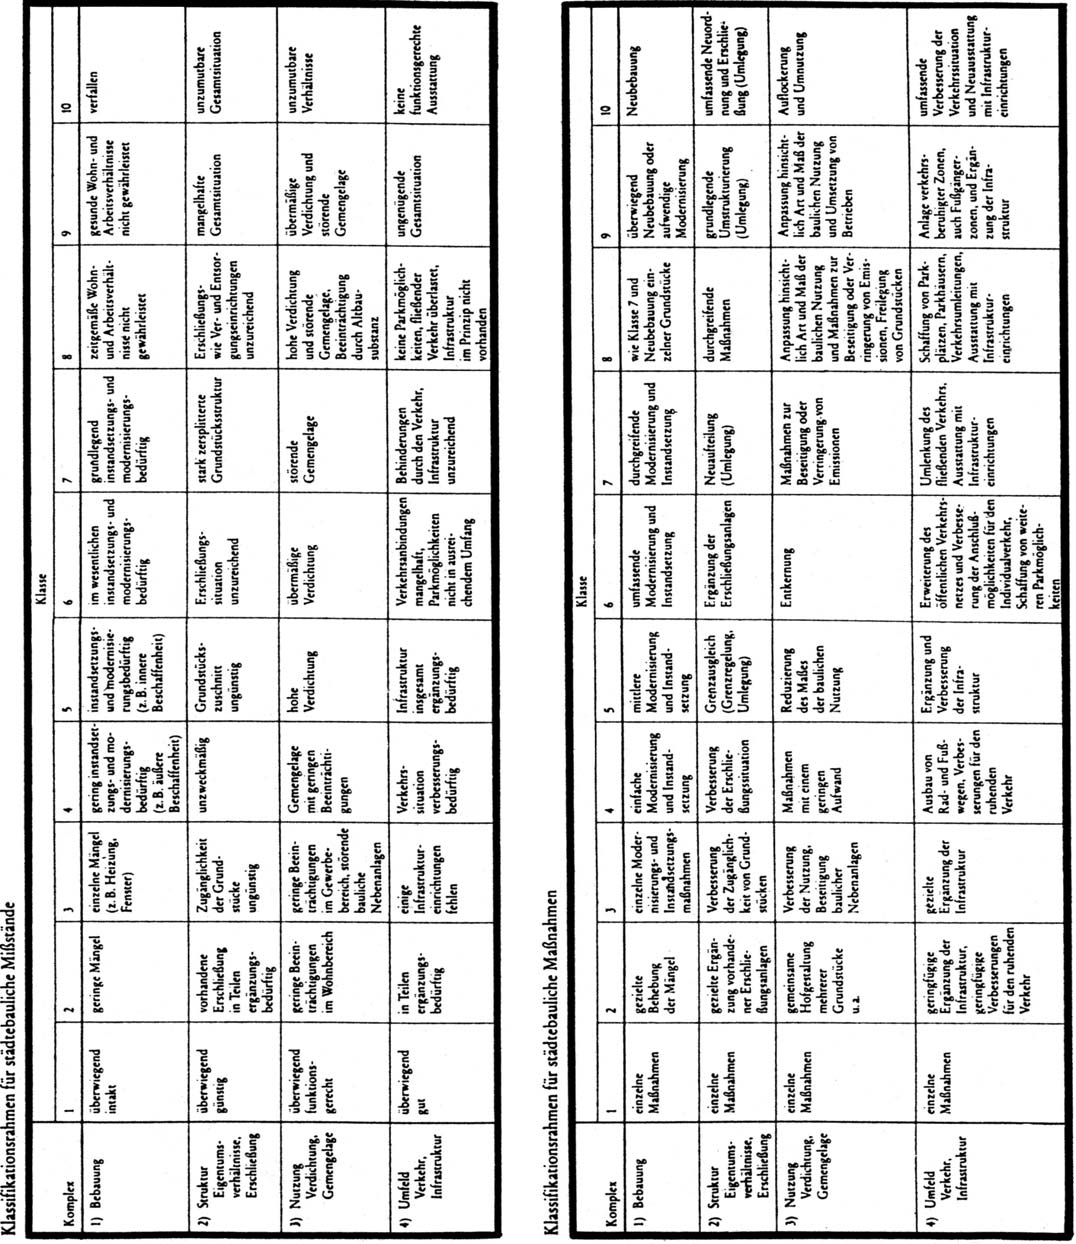 2006-2-019 - Seite 18 Klassifikationsrahmen für städtebauliche Missstände und Maßnahmen (Erich Kanngieser/Hermann Bodenstein: Praktische Ermittlung